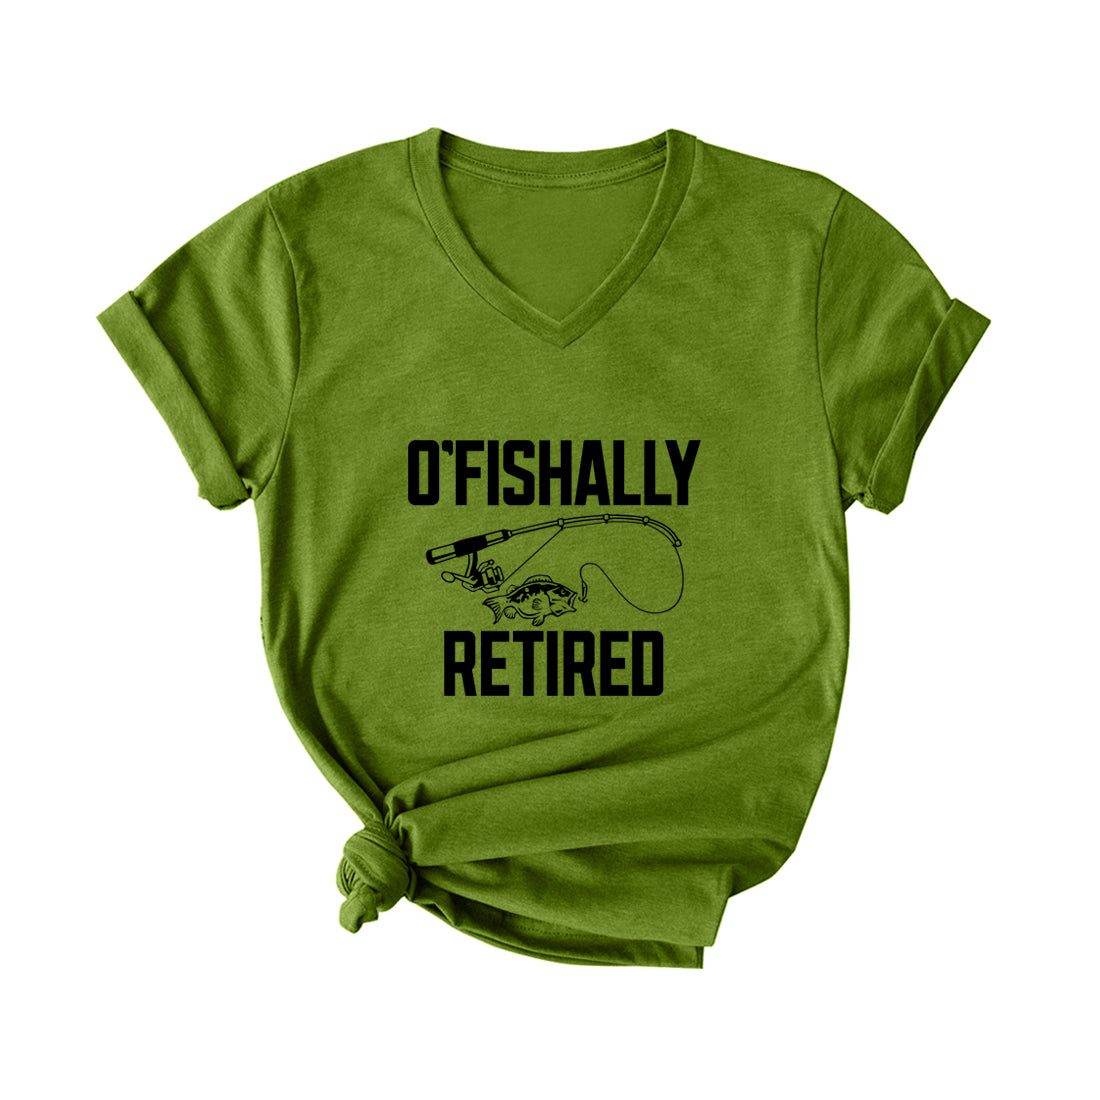 O'FISHALLY RETIRED V Neck T-Shirt for Women